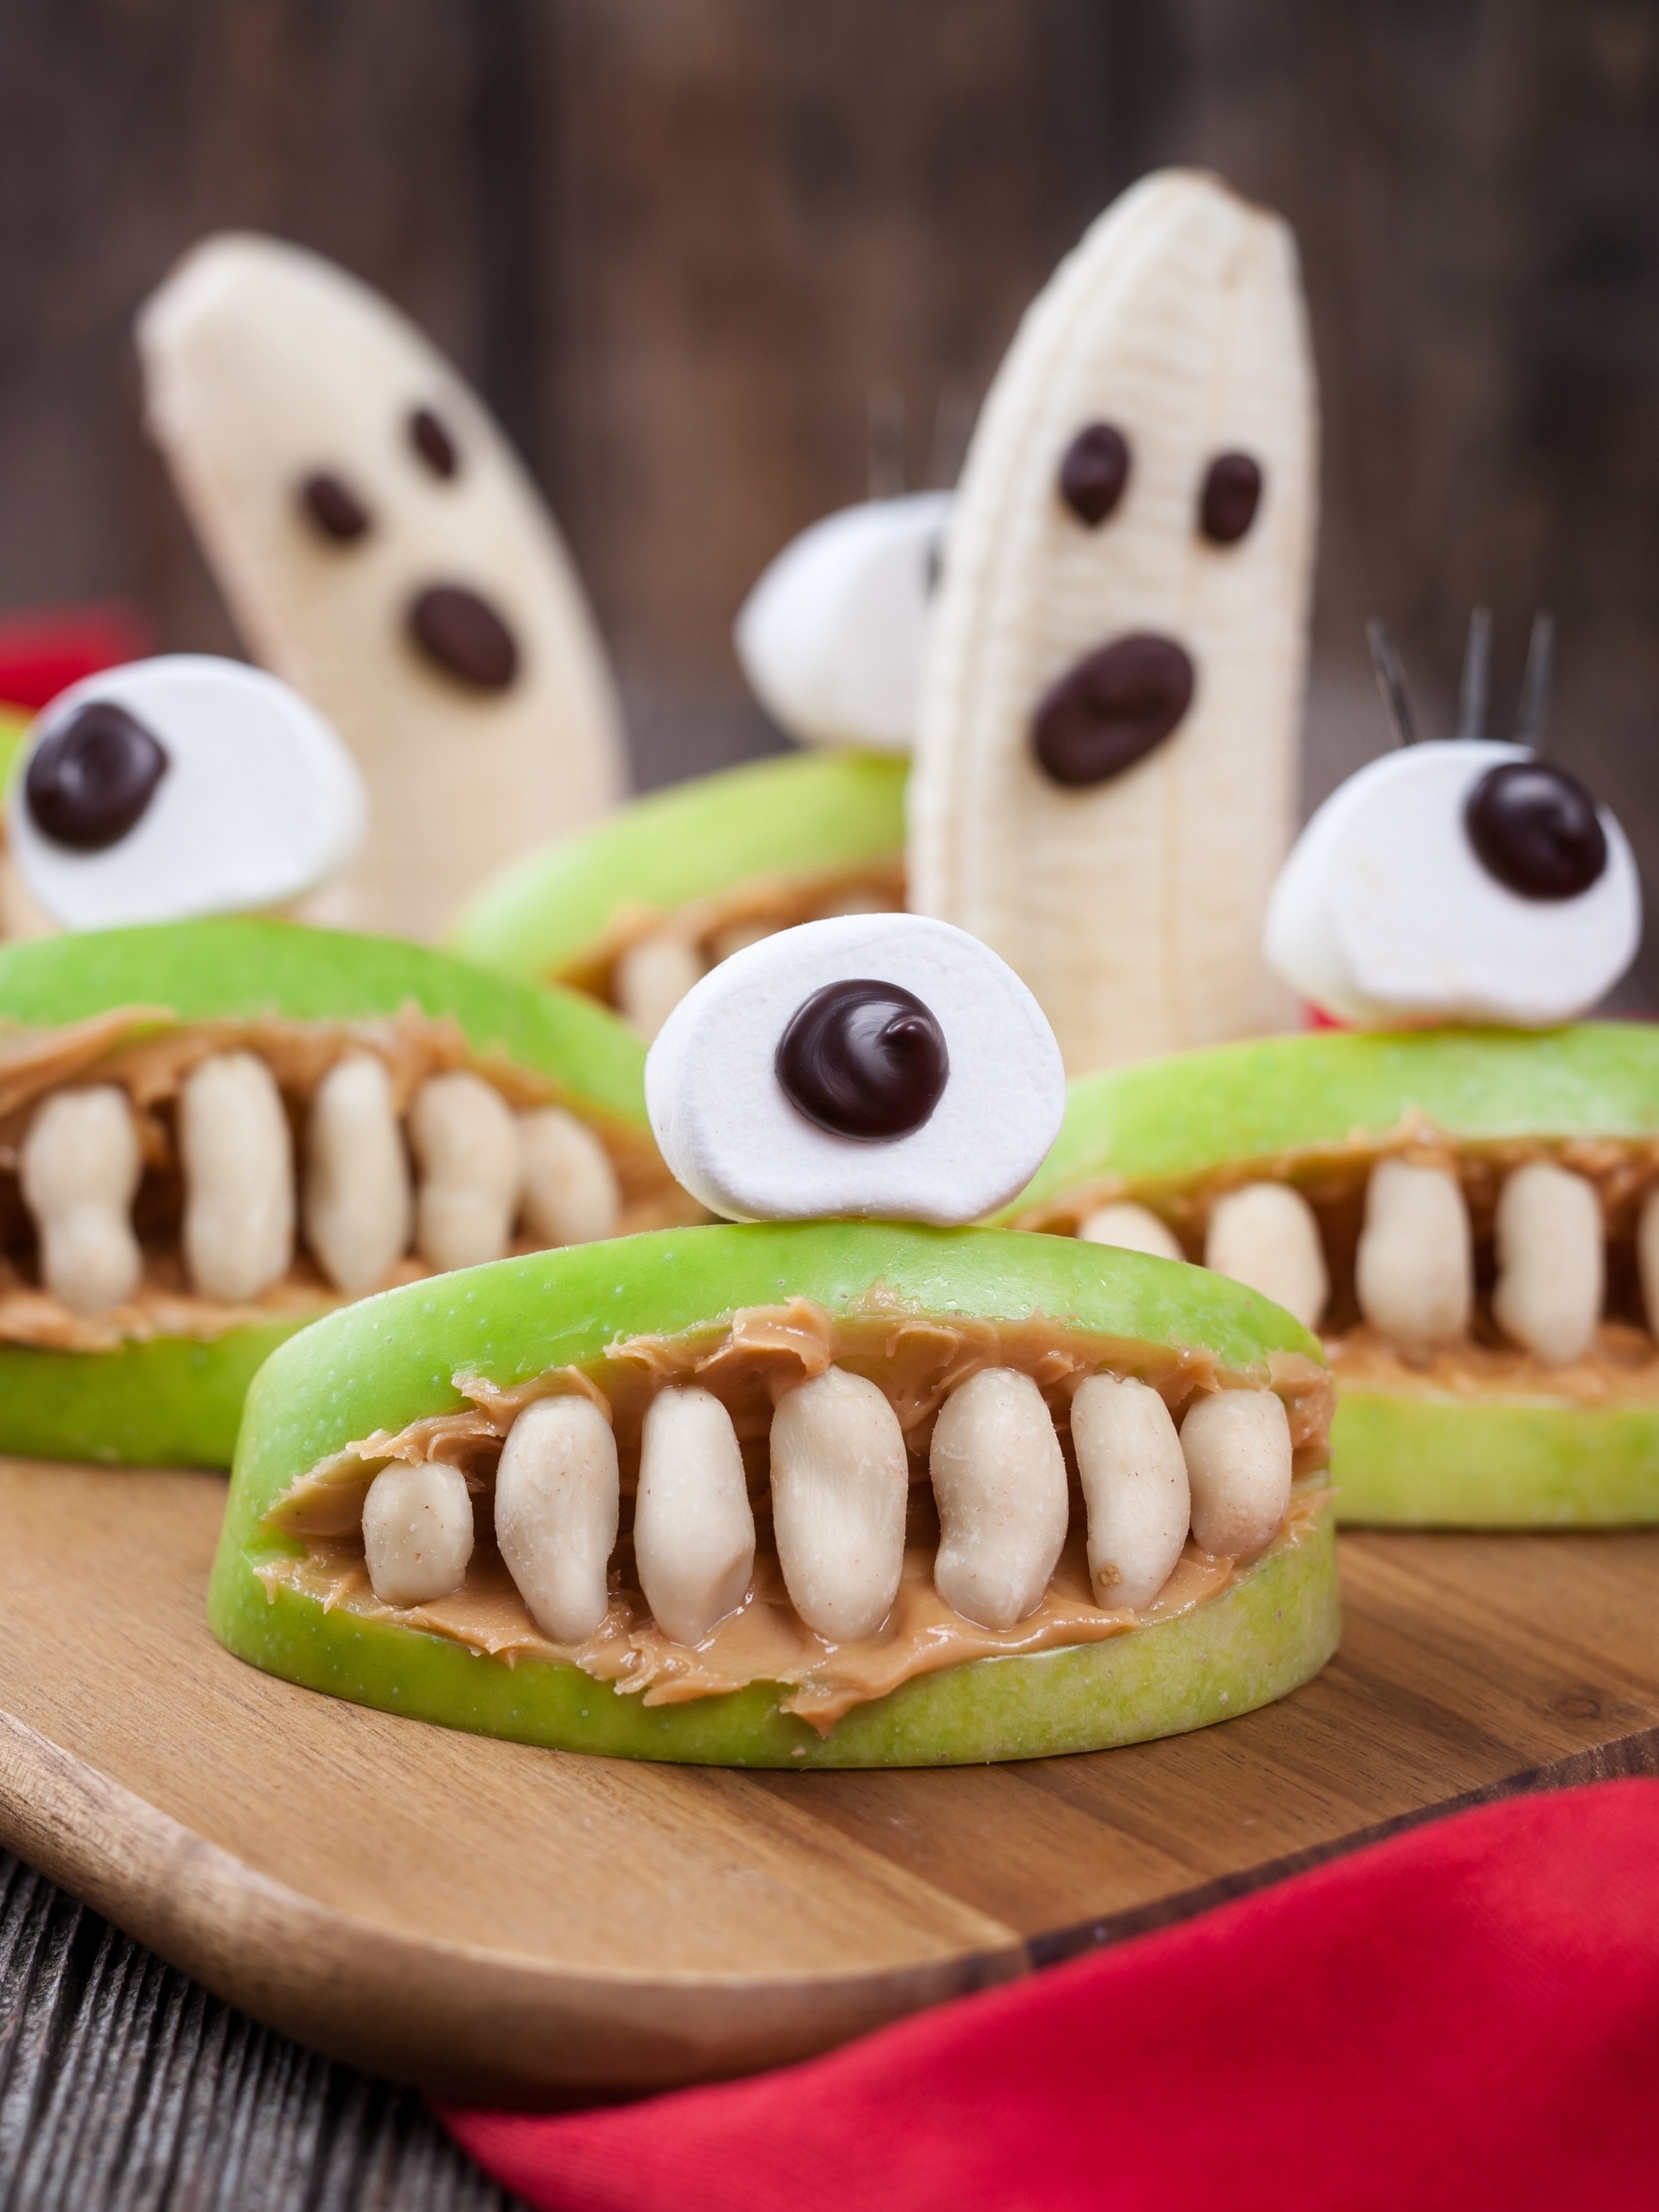 Comidas de Halloween: 20 receitas assustadoras para o Dia das